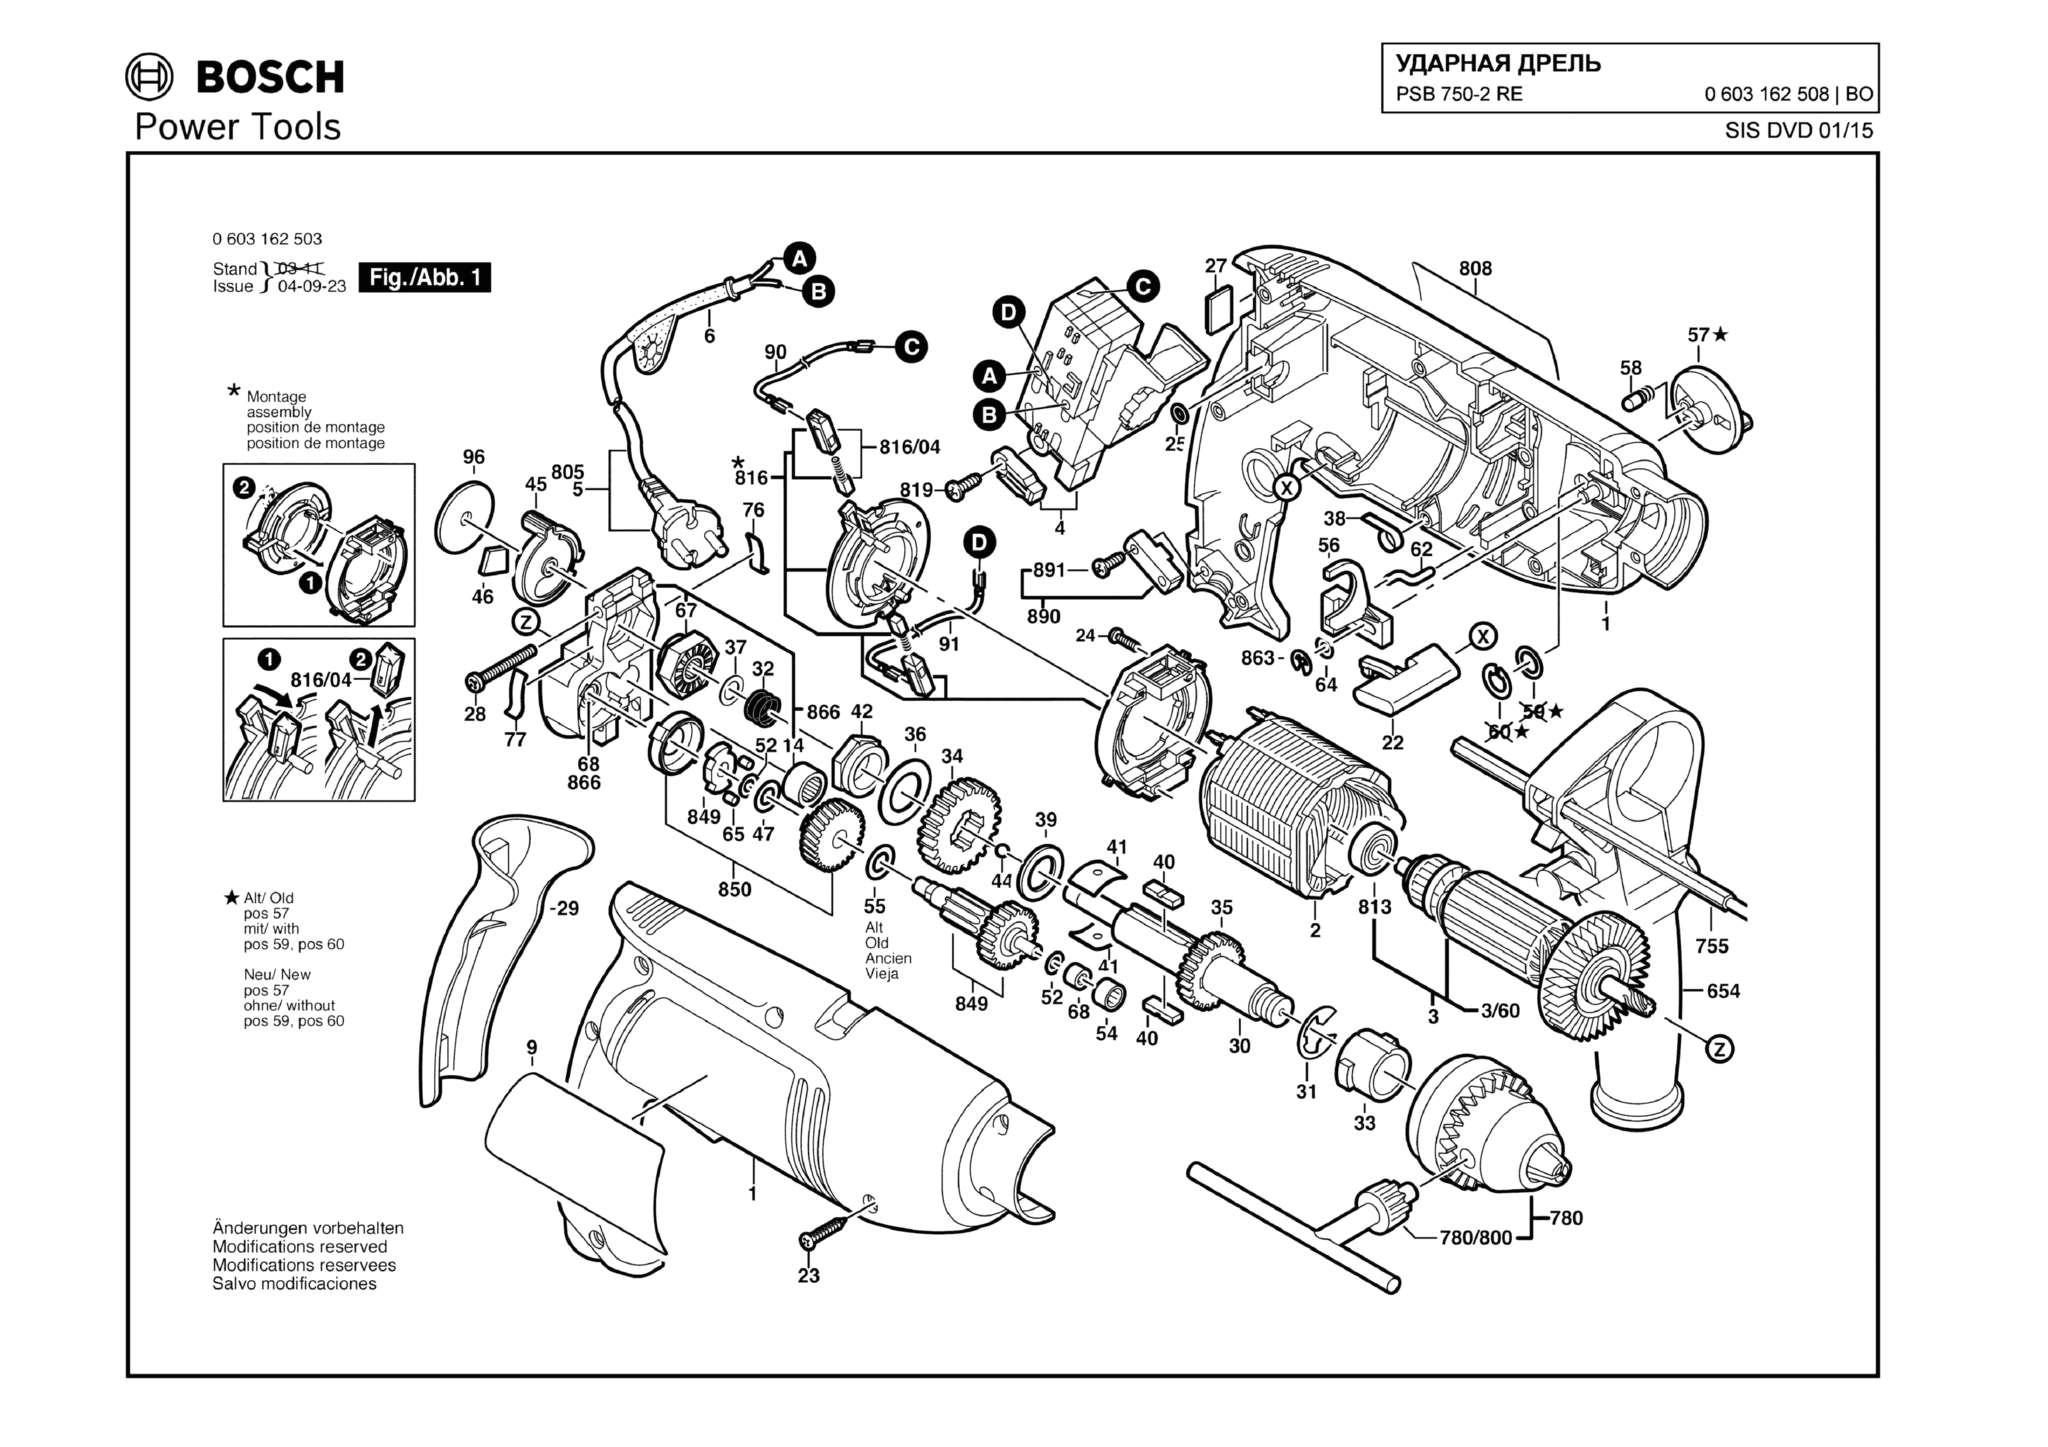 Запчасти, схема и деталировка Bosch PSB 750-2 RE (ТИП 0603162508)